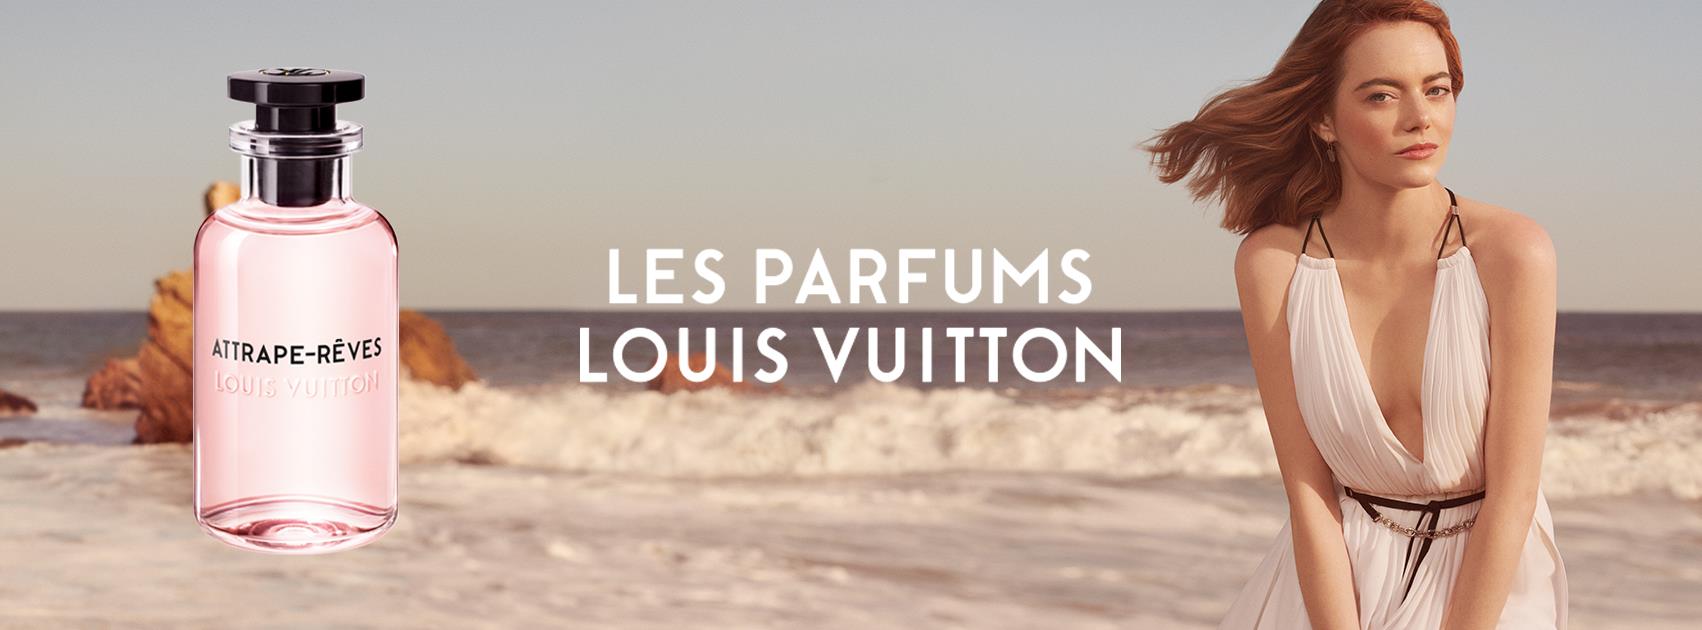 Emma Stone Soles Louis Vuitton Commercial